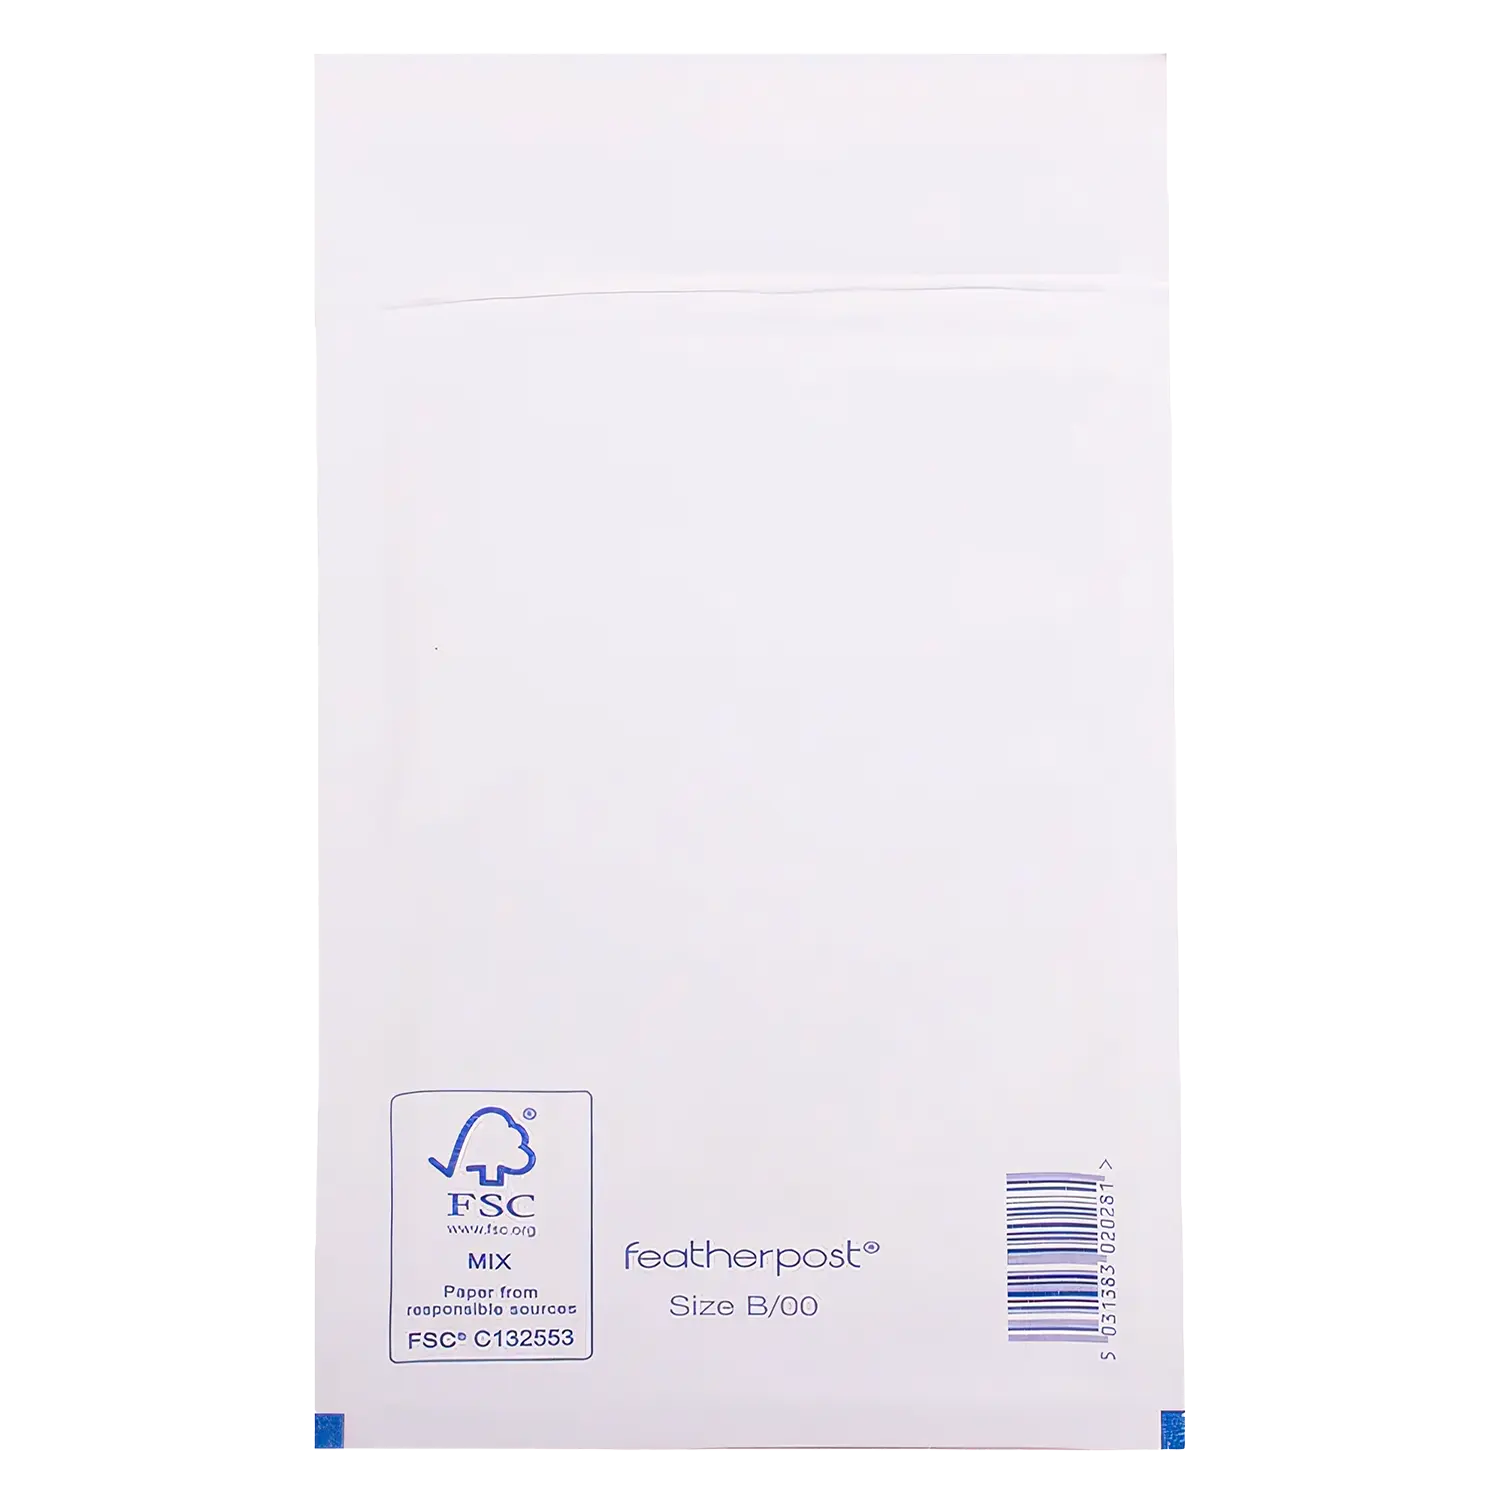 White Padded Bubble Envelopes Open - White Padded Bubble Envelopes - White Padded Bubble Envelopes - 150x215mm